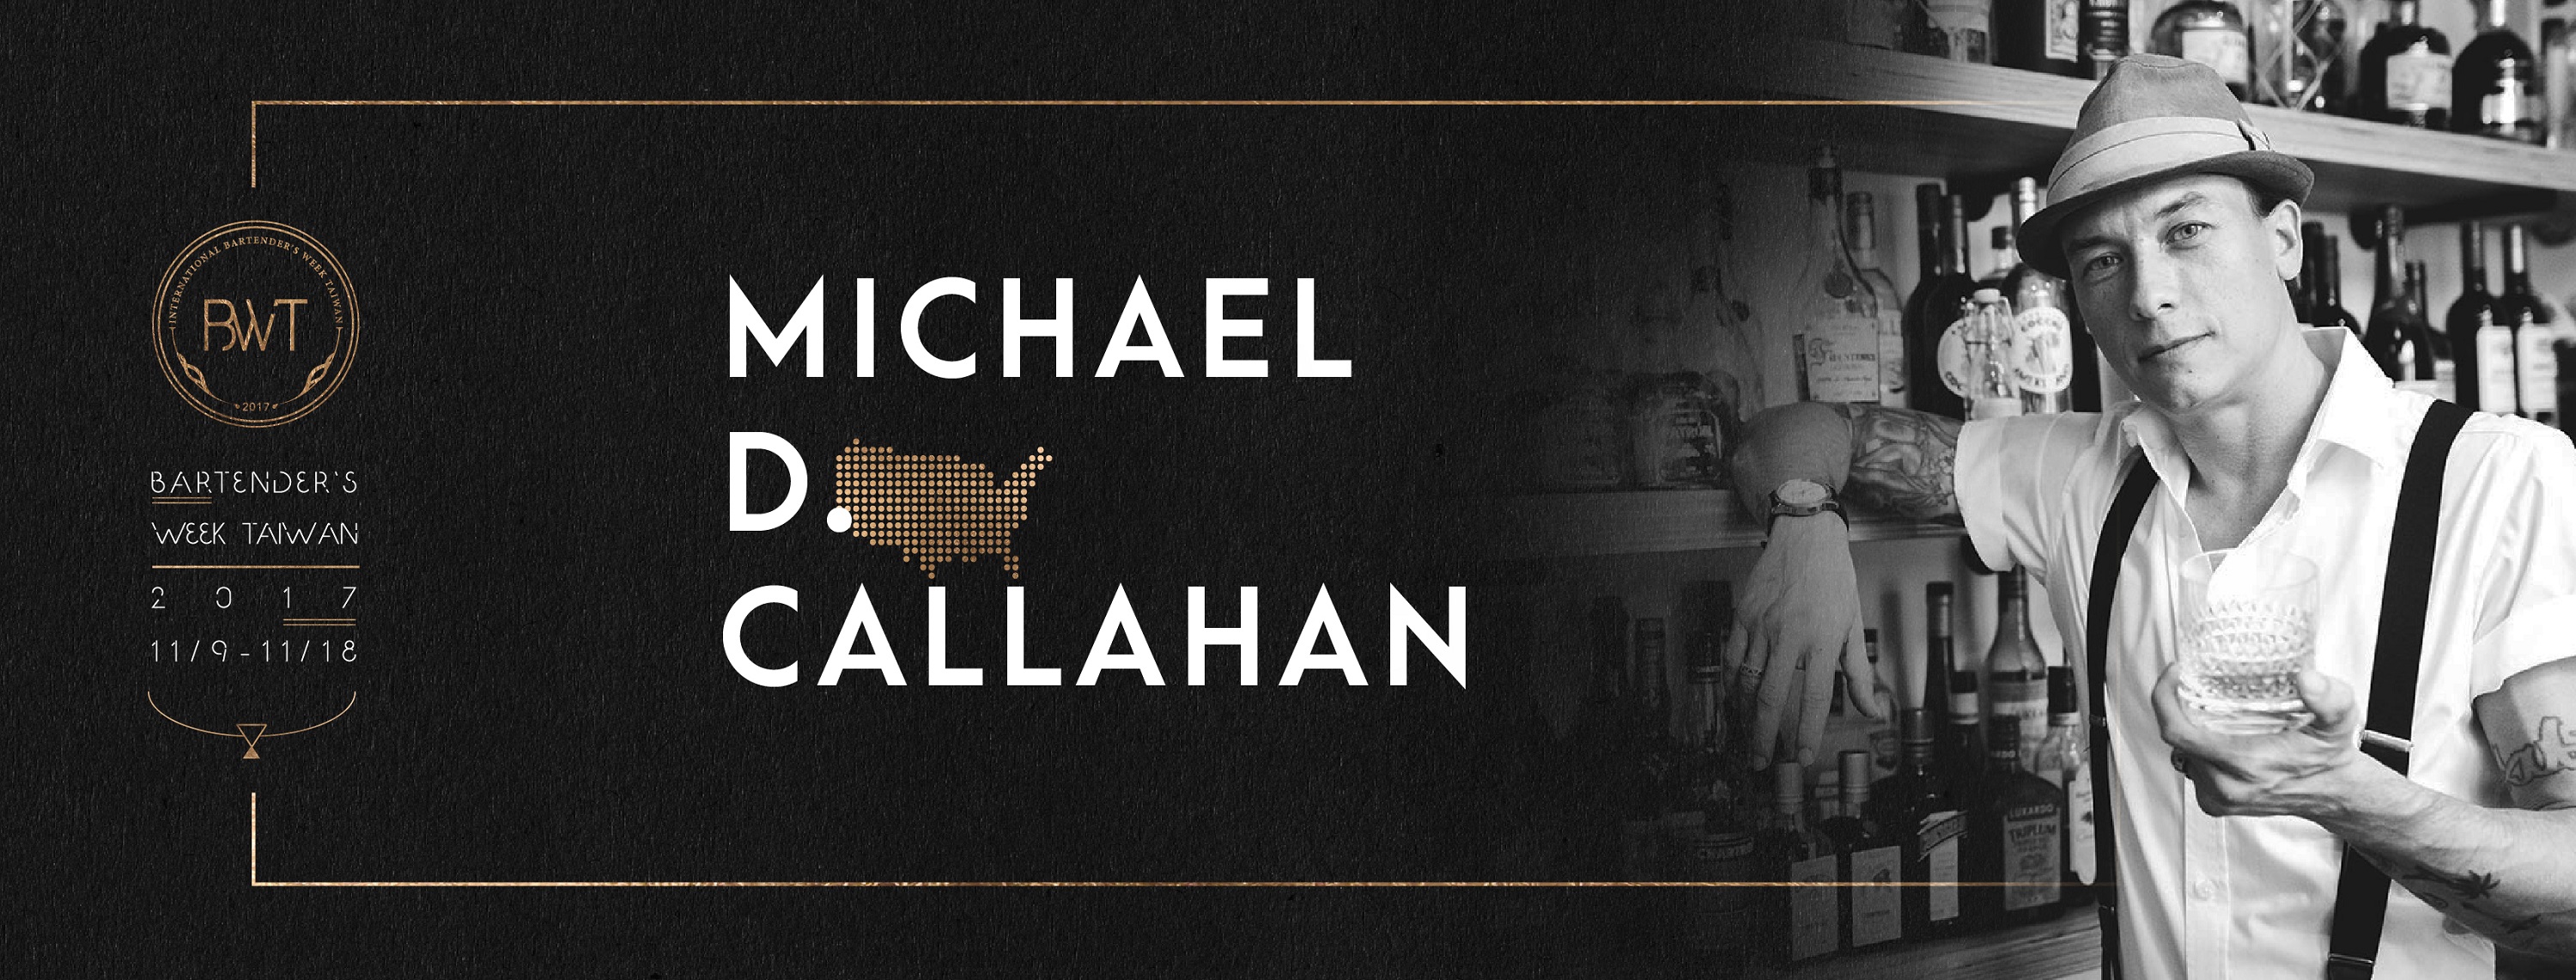 Michael D. Callahan